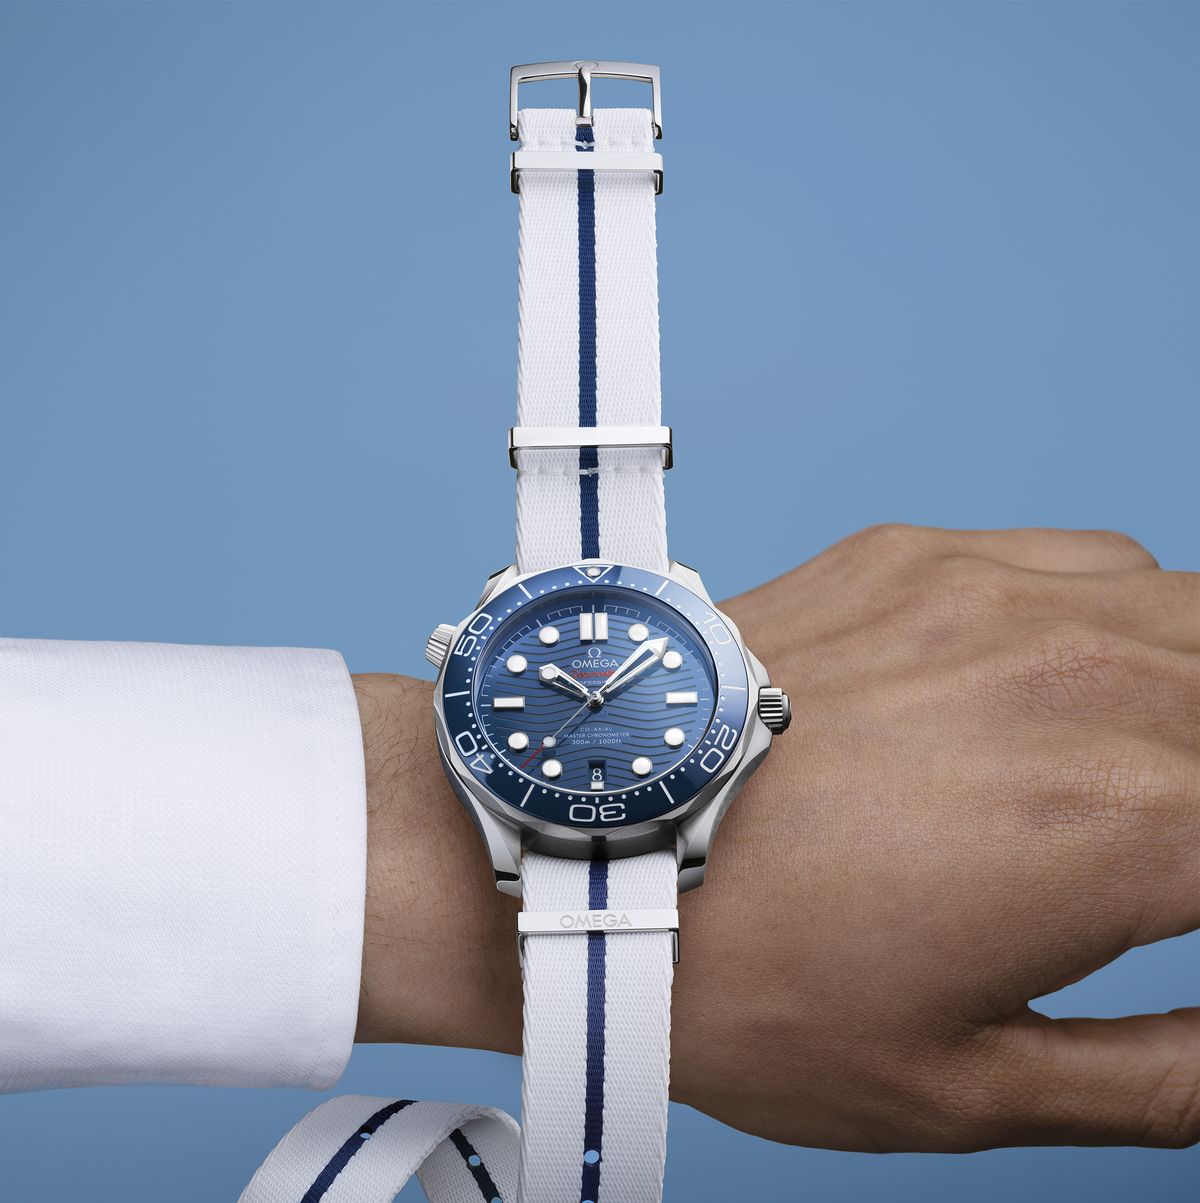 Reloj Omega para hombre - Seamaster Diver 300M, el reloj más barato